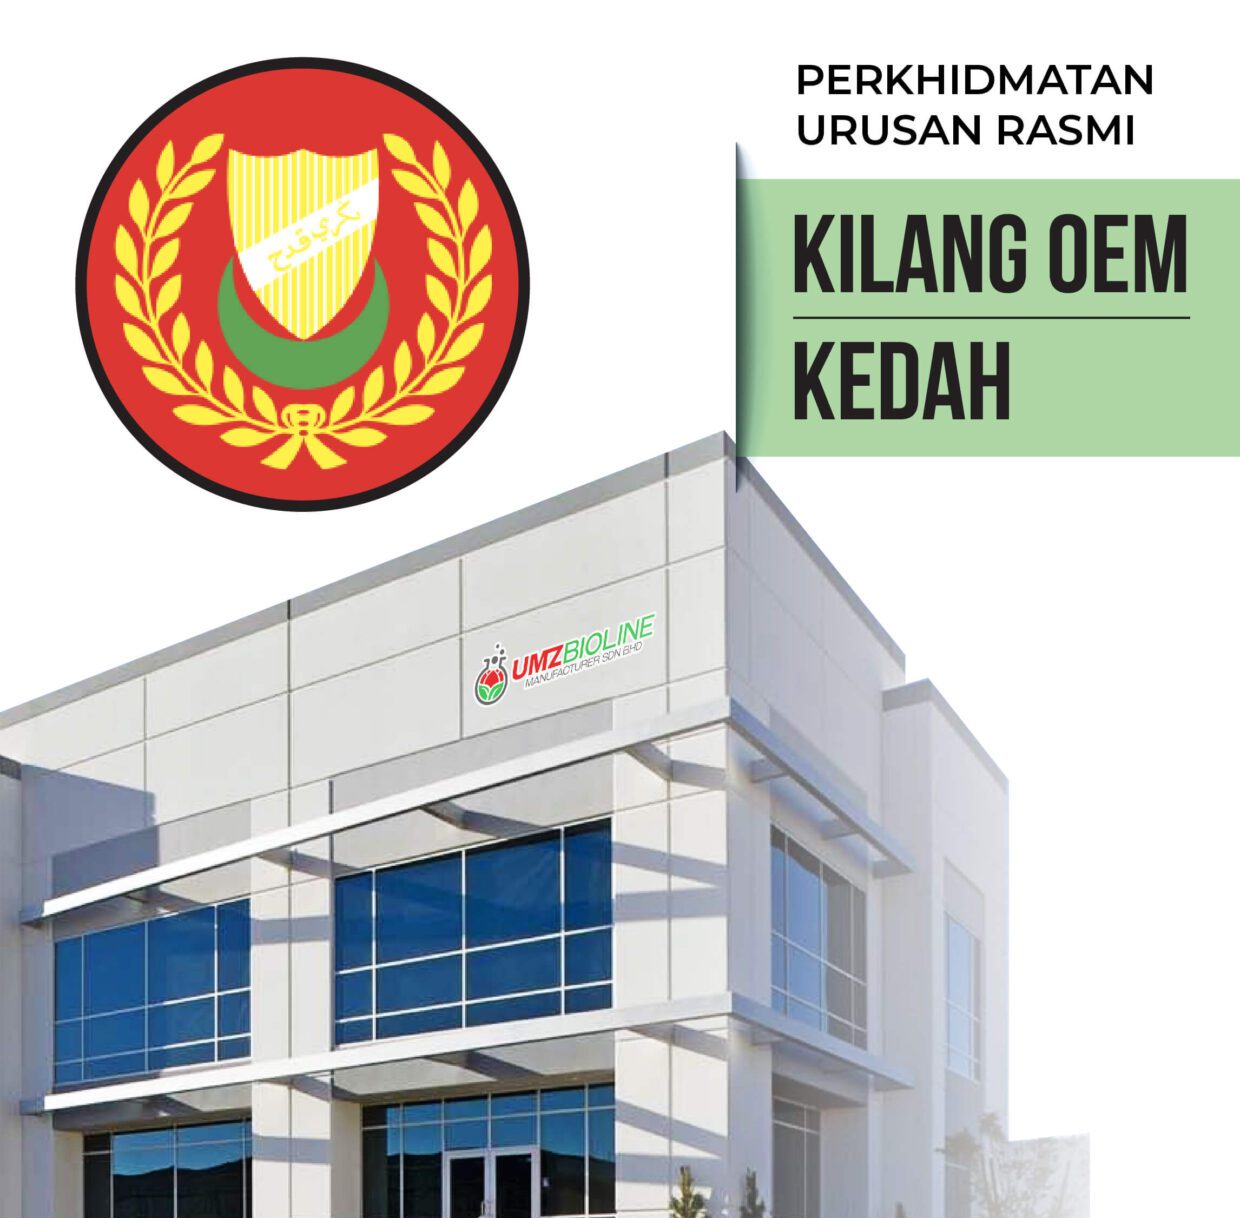 Perkhidmatan OEM Kedah